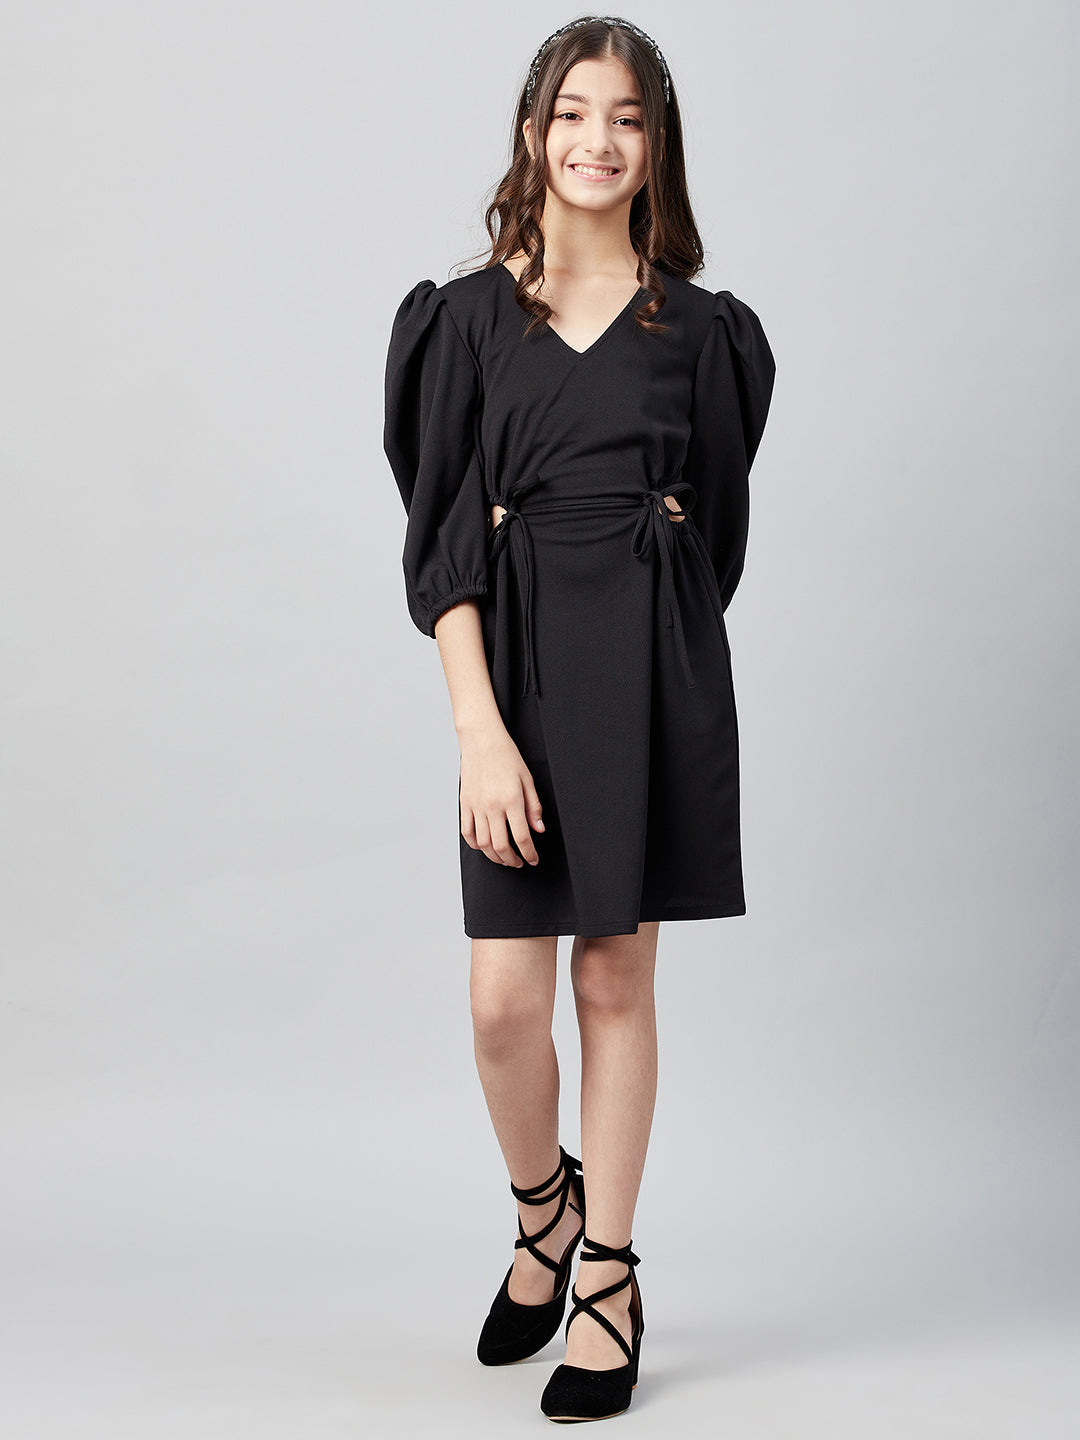 Athena Girl Black Dress - Athena Lifestyle